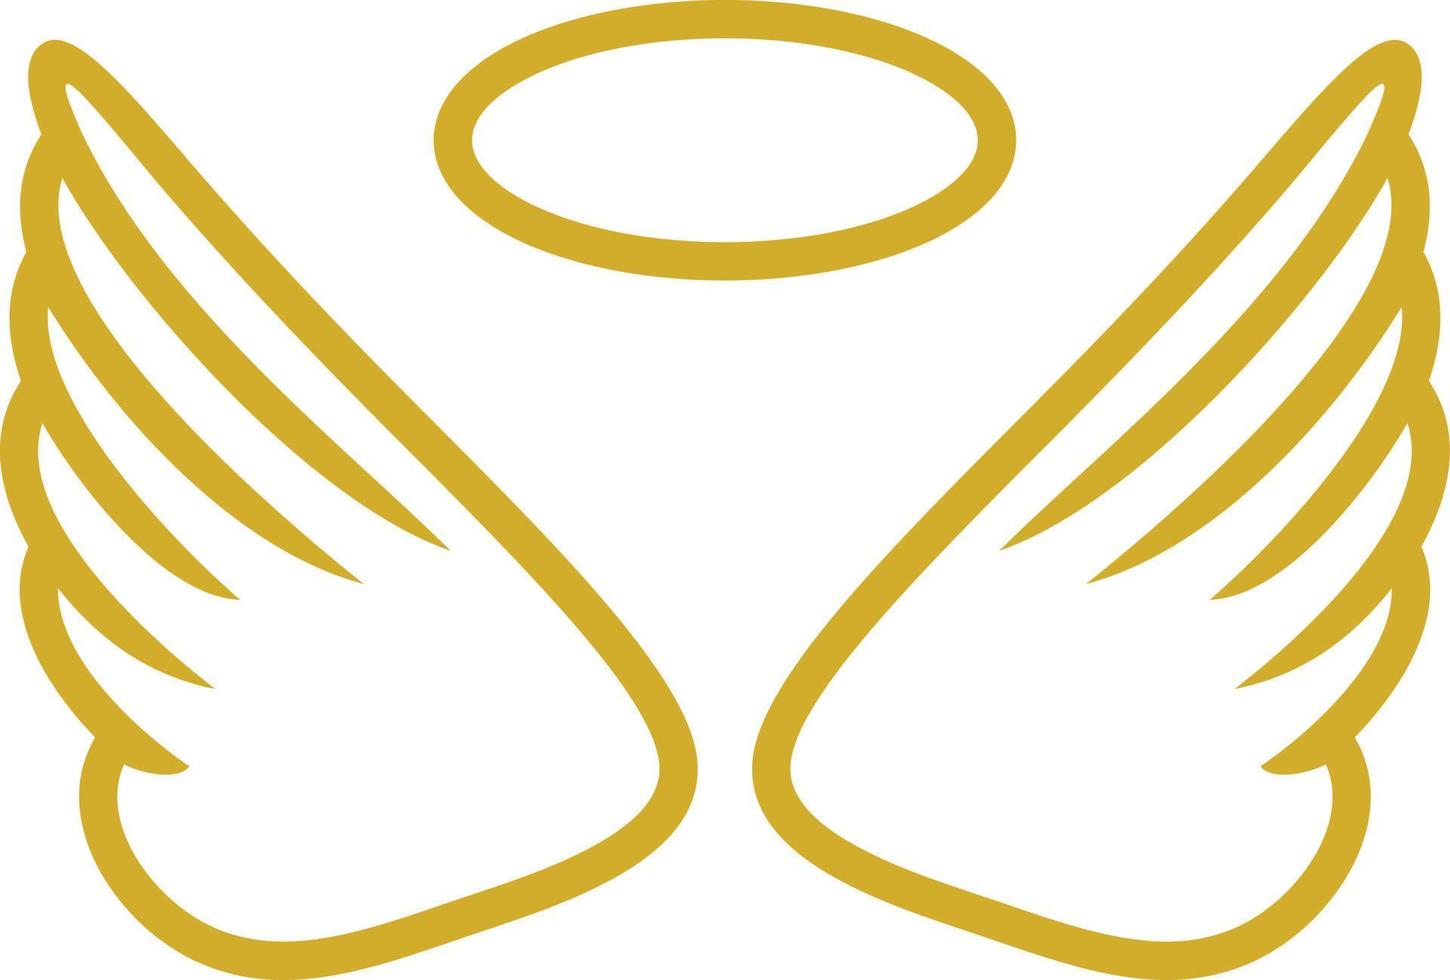 Golden angel wings vector